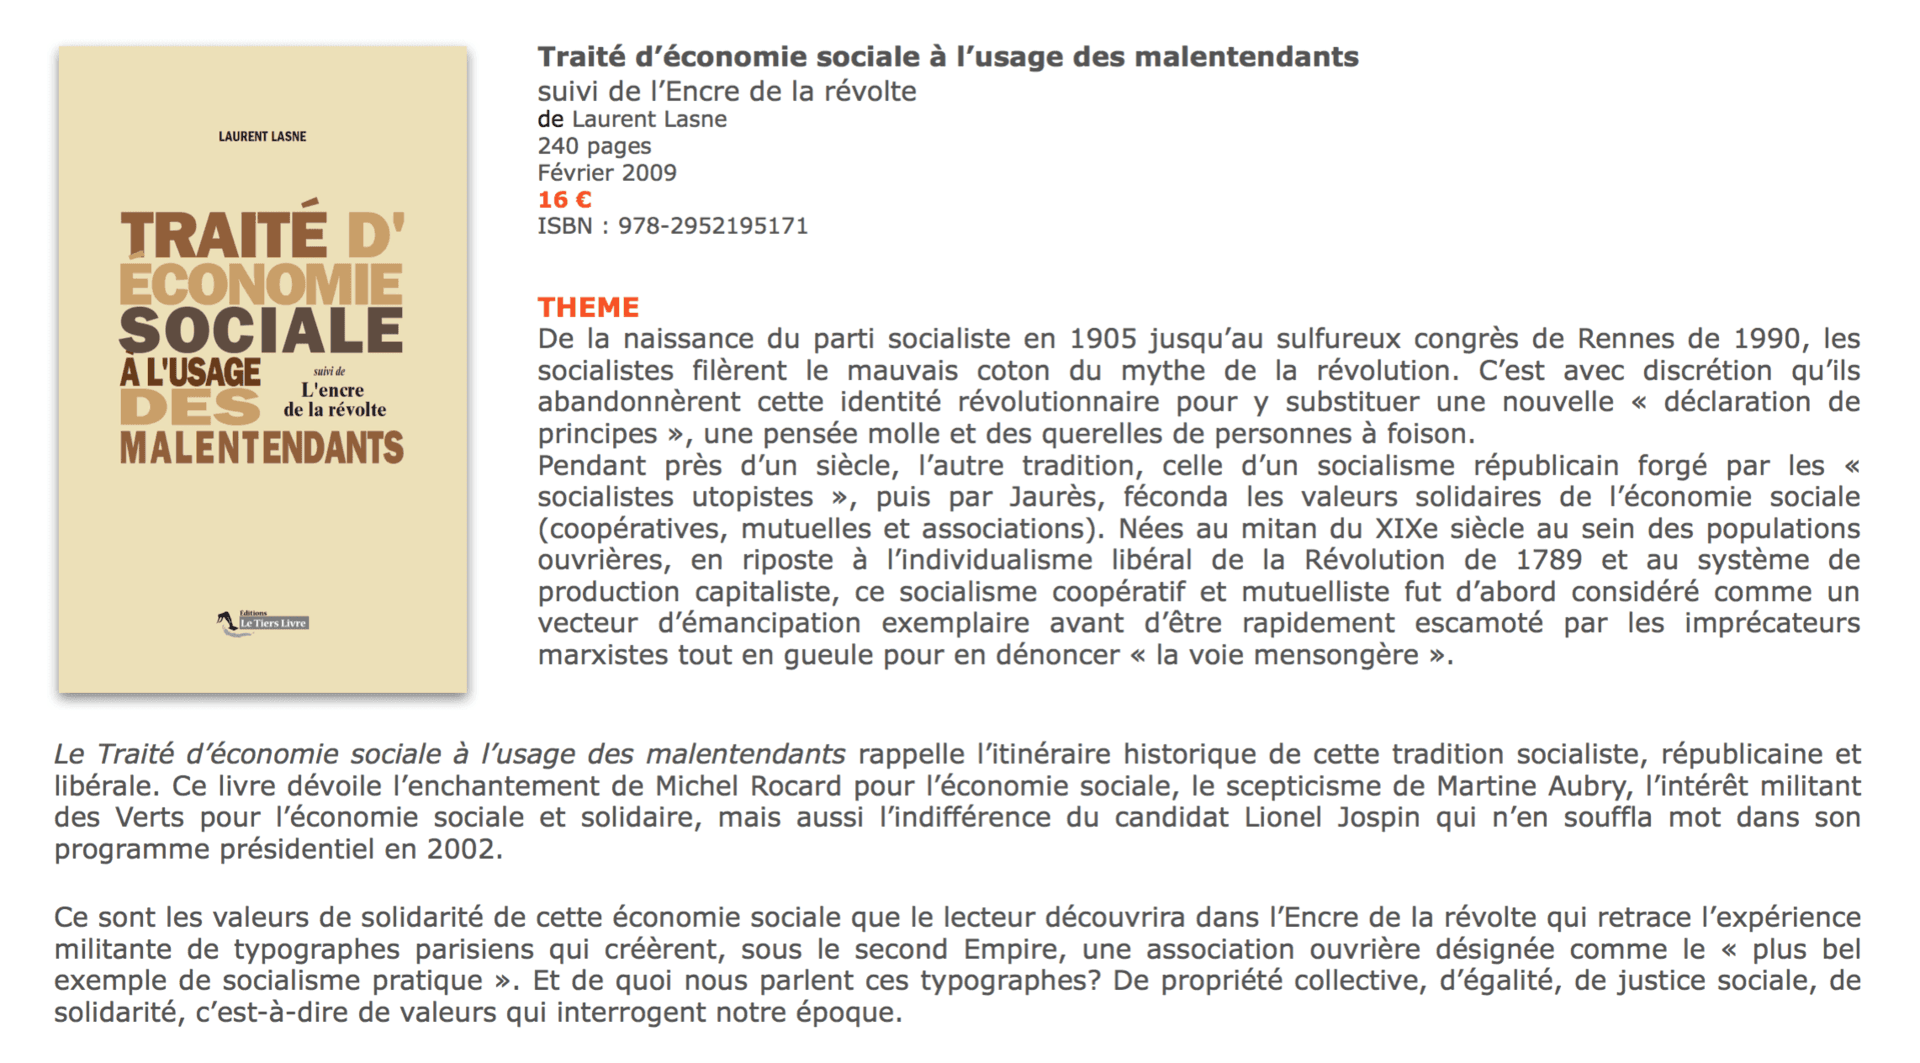 Traité d'économie sociale à l'usage des malentendants, Laurent Lasne, éditions Le Tiers Livre